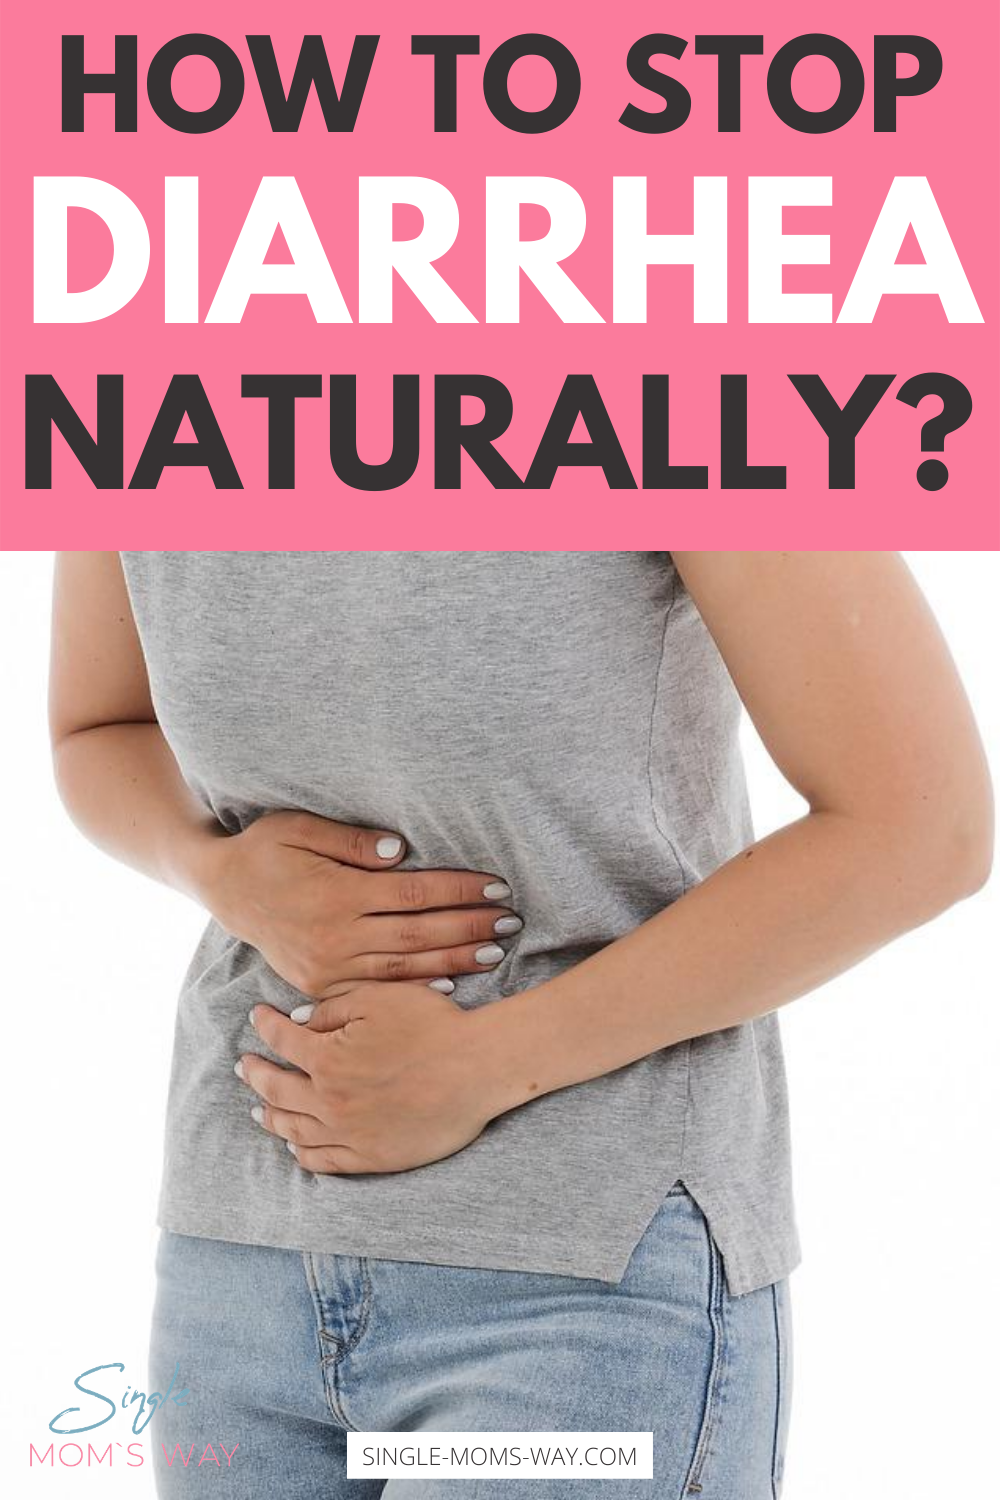 How To Stop Diarrhea Naturally?